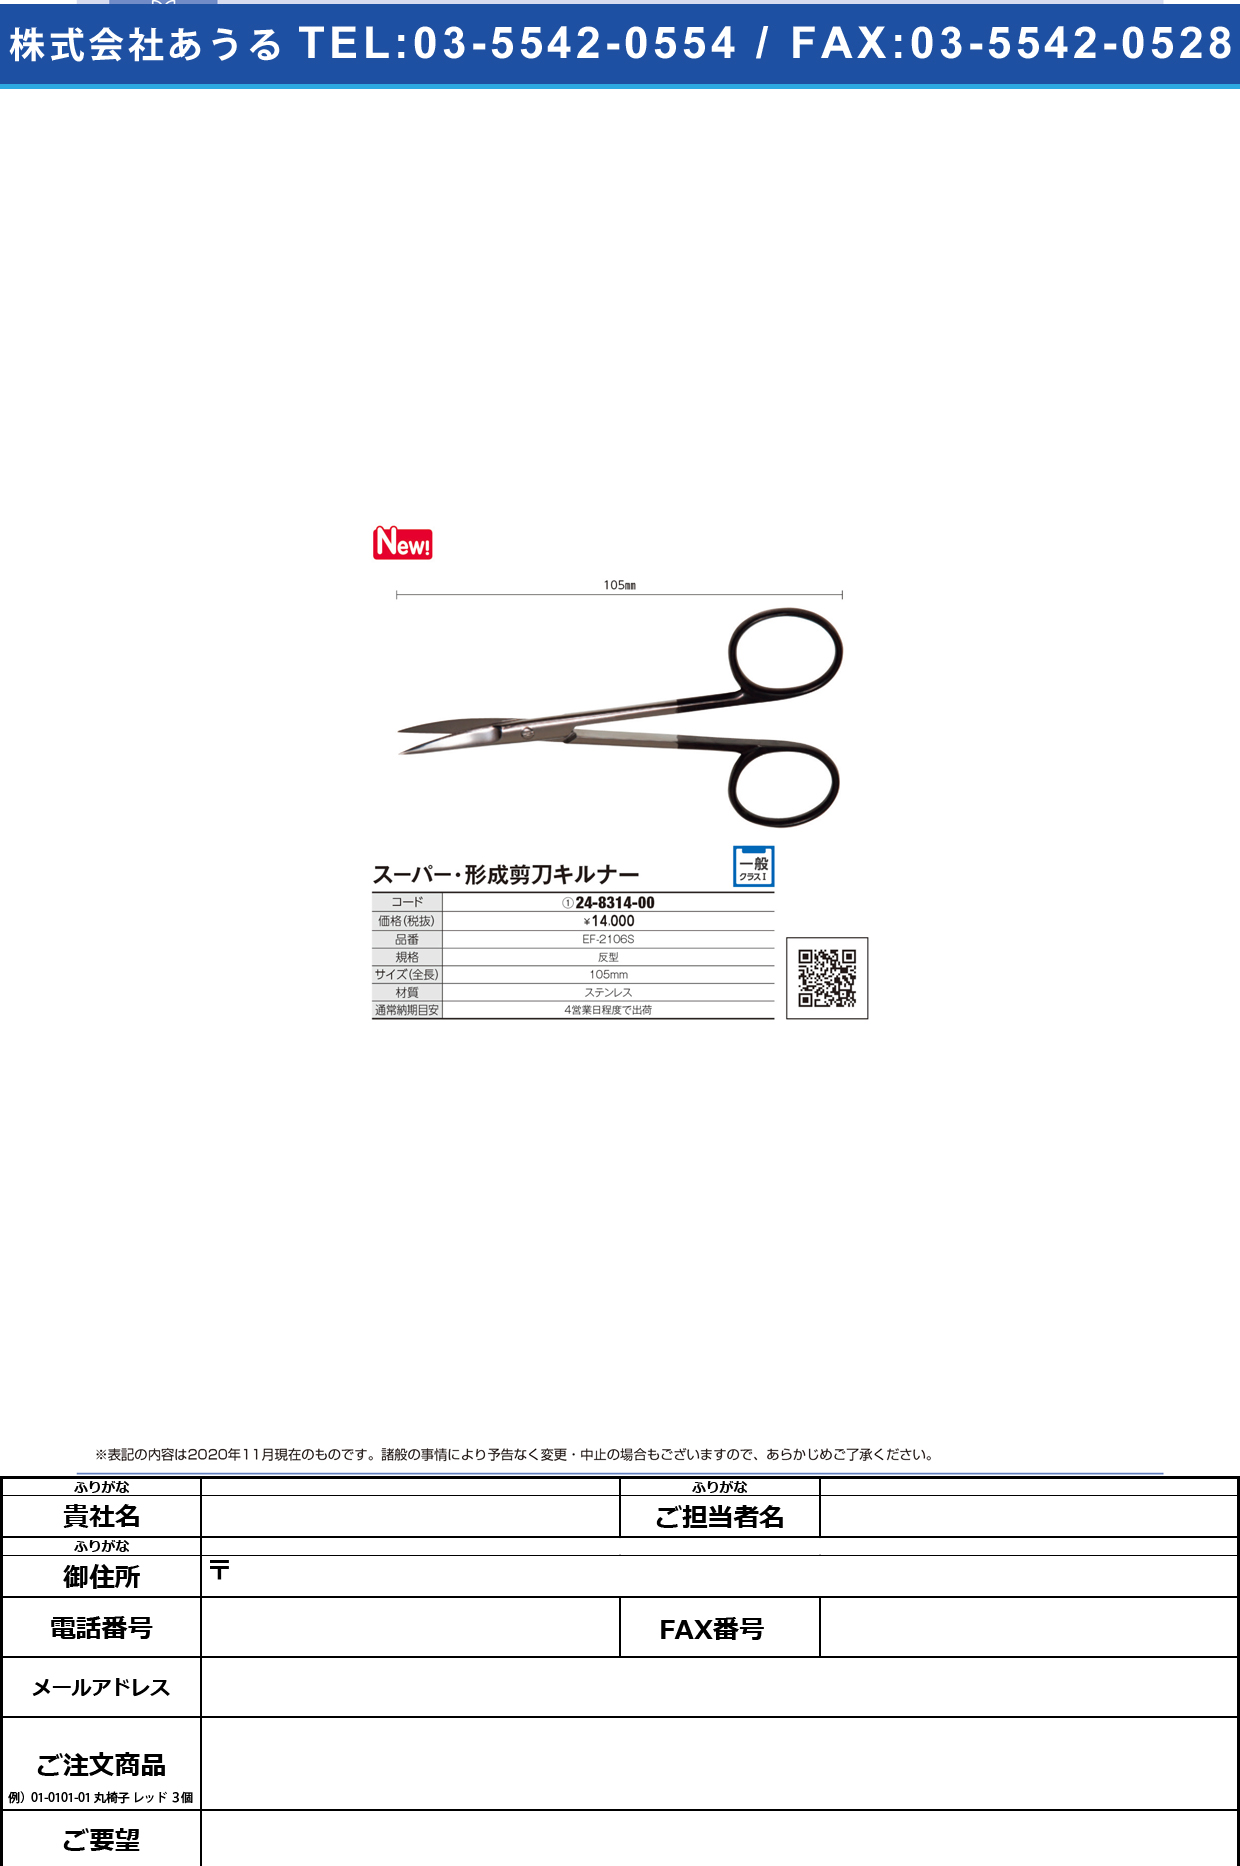 ス-パ-・形成剪刀 キルナー 曲 EF-2106S(10．5CM)EF-2106S(10.5CM)(24-8314-00)【フリッツメディコ】(販売単位:1)